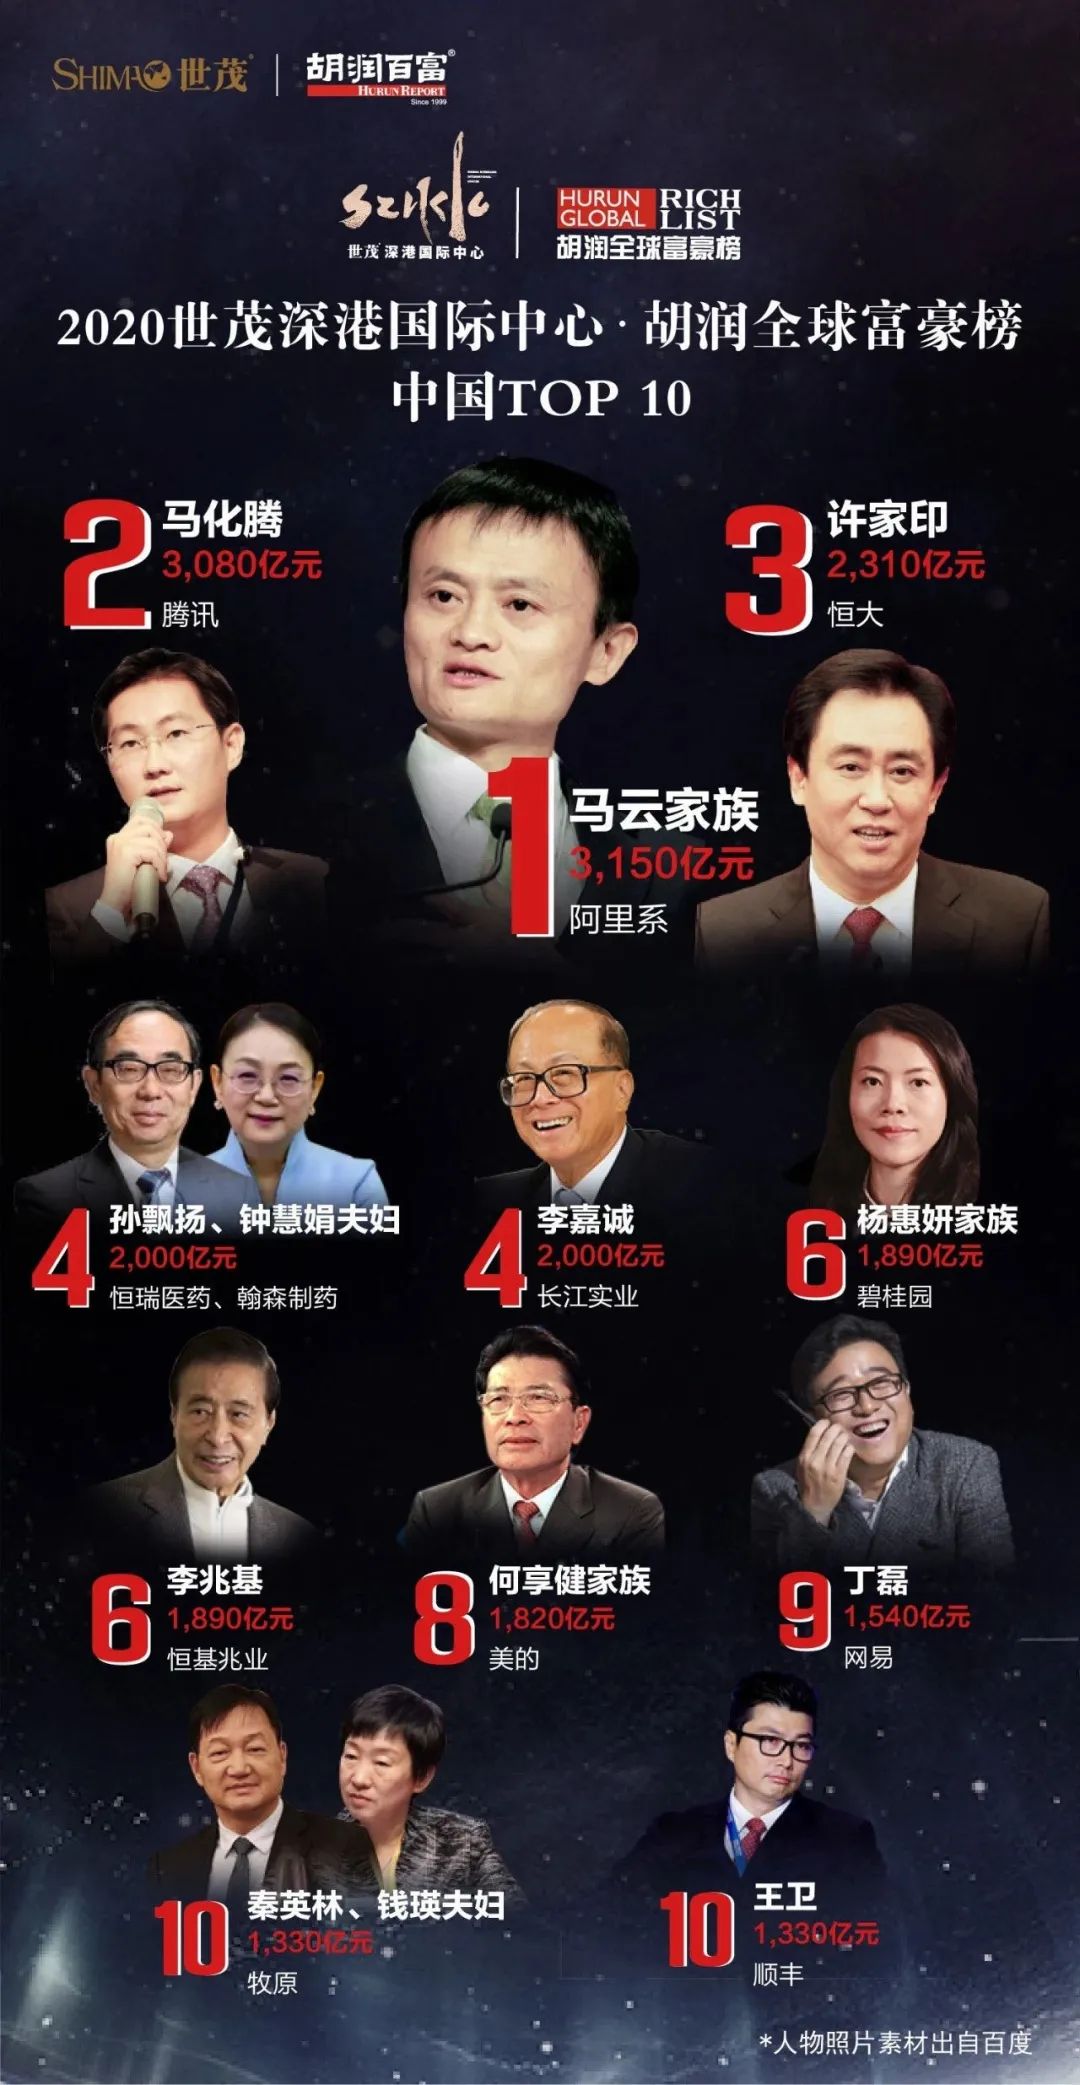 深圳富豪全国第二多、最有钱的是这12个人！_社会_长沙社区通